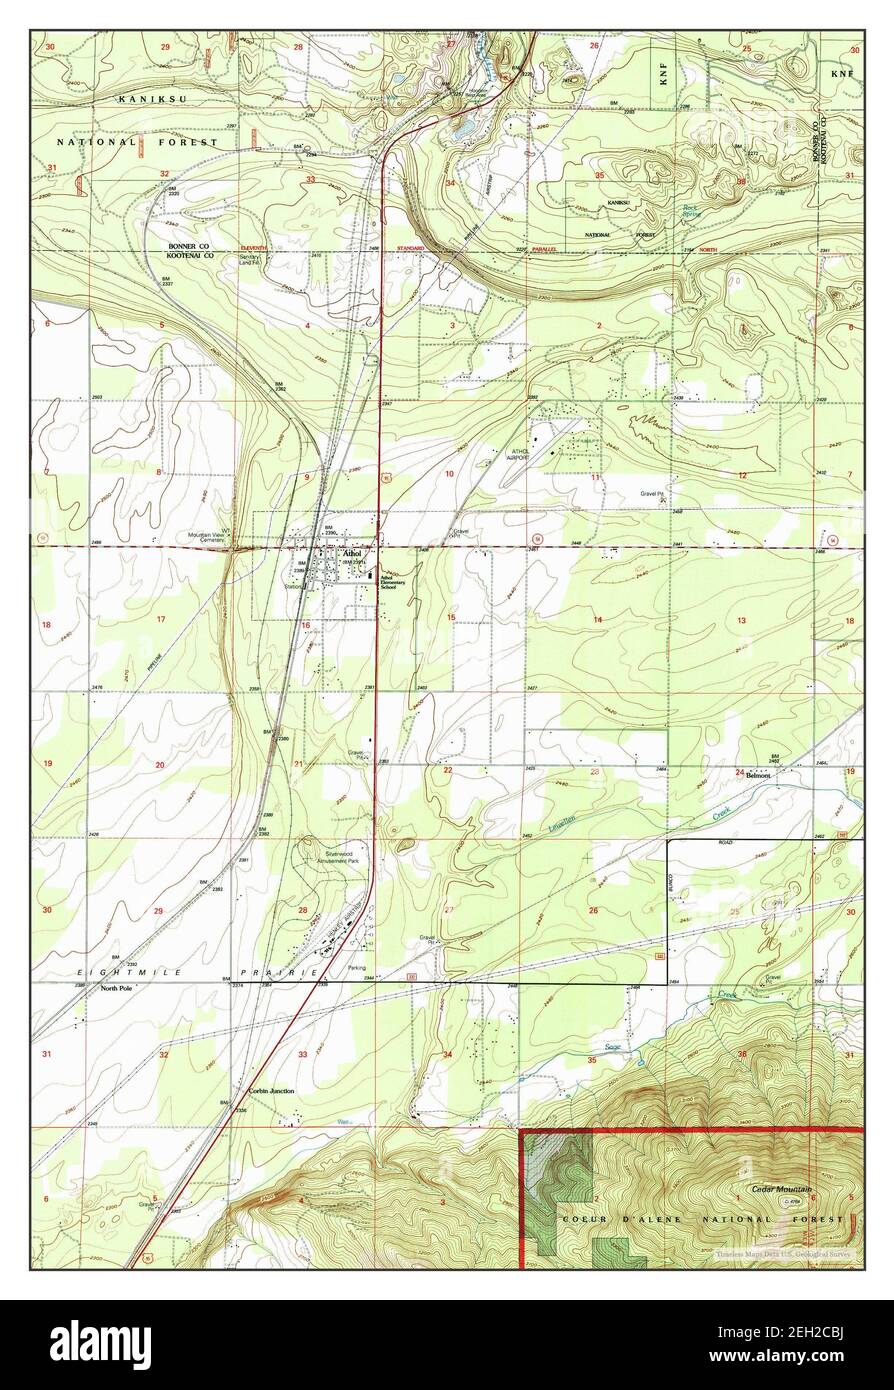 Athol, Idaho, map 1996, 1:24000, United States of America by Timeless Maps, data U.S. Geological Survey Stock Photo